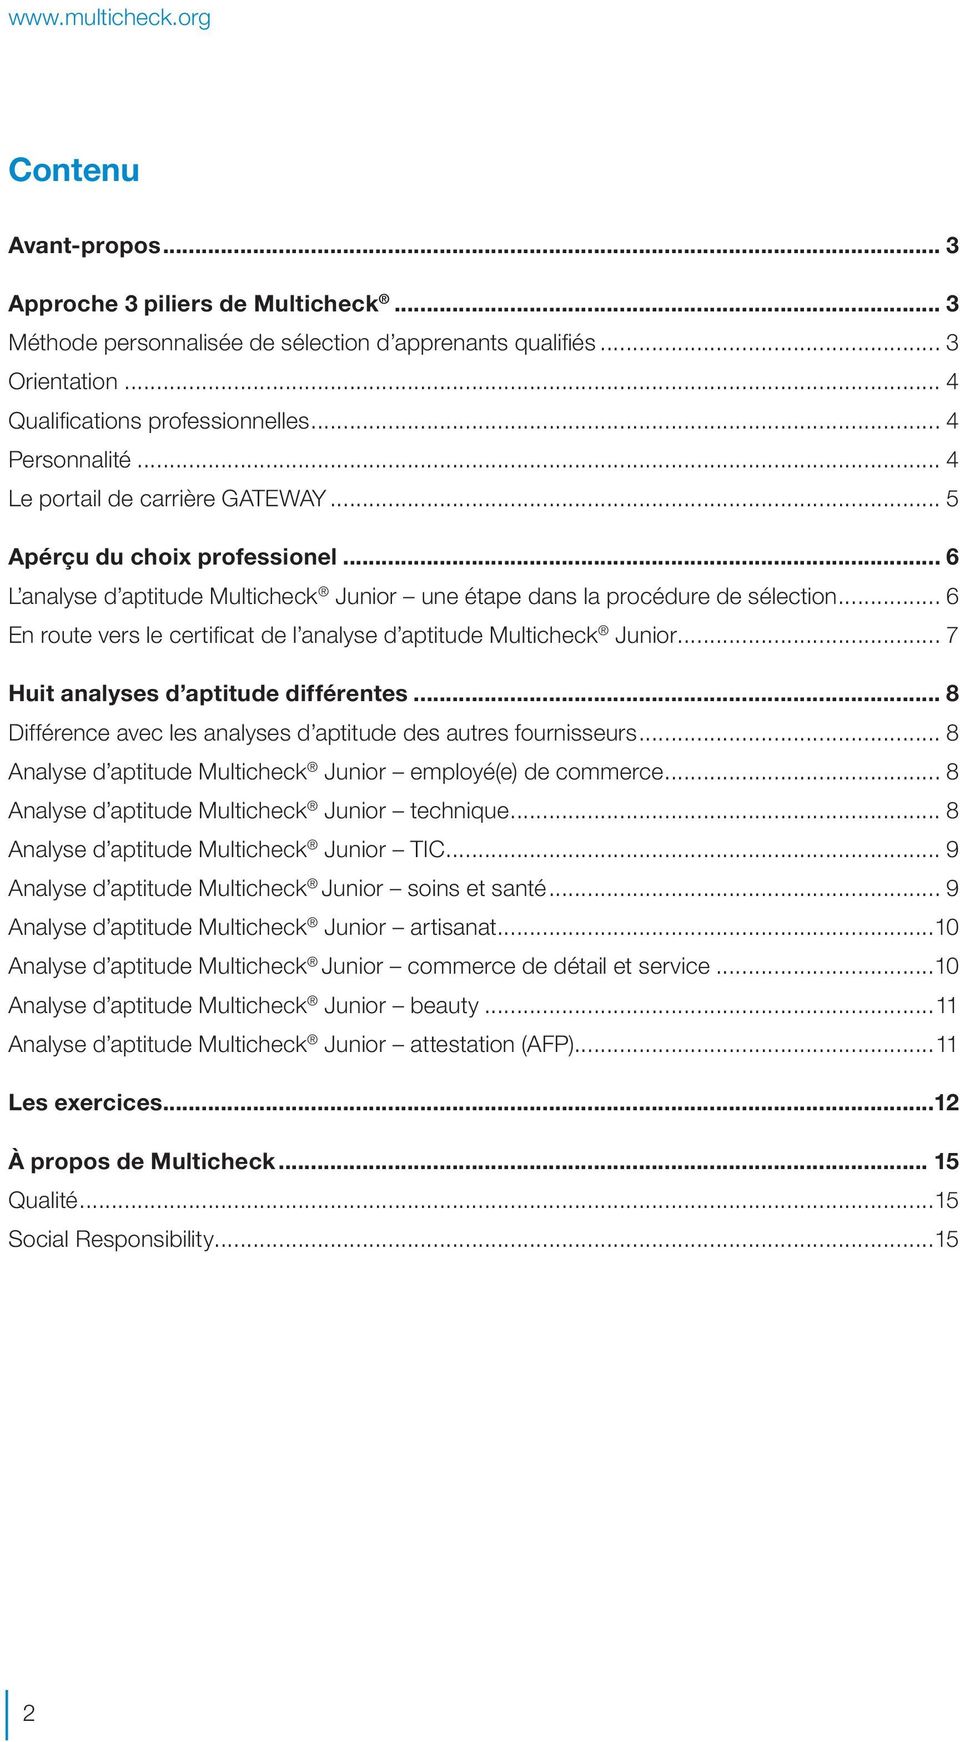 .. 6 En route vers le certificat de l analyse d aptitude Multicheck Junior... 7 Huit analyses d aptitude différentes... 8 Différence avec les analyses d aptitude des autres fournisseurs.